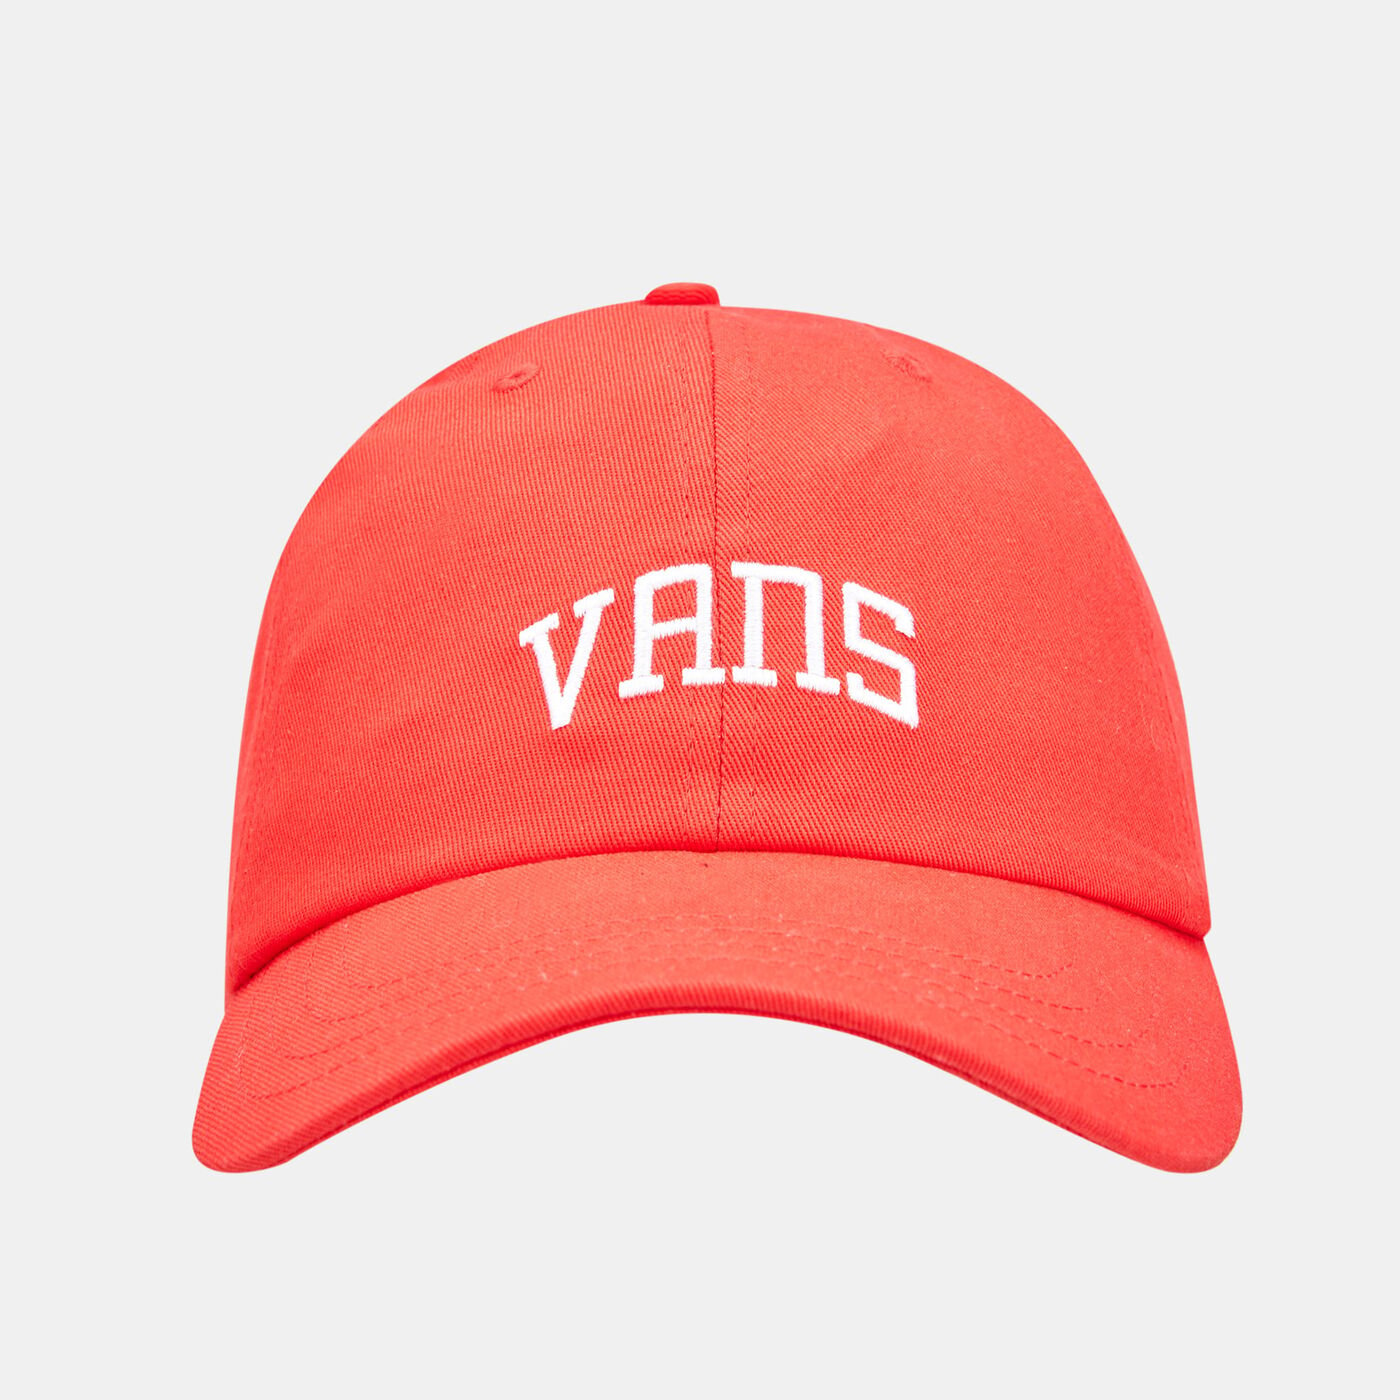 Men's New Varsity Curved Bill Jockey Hat